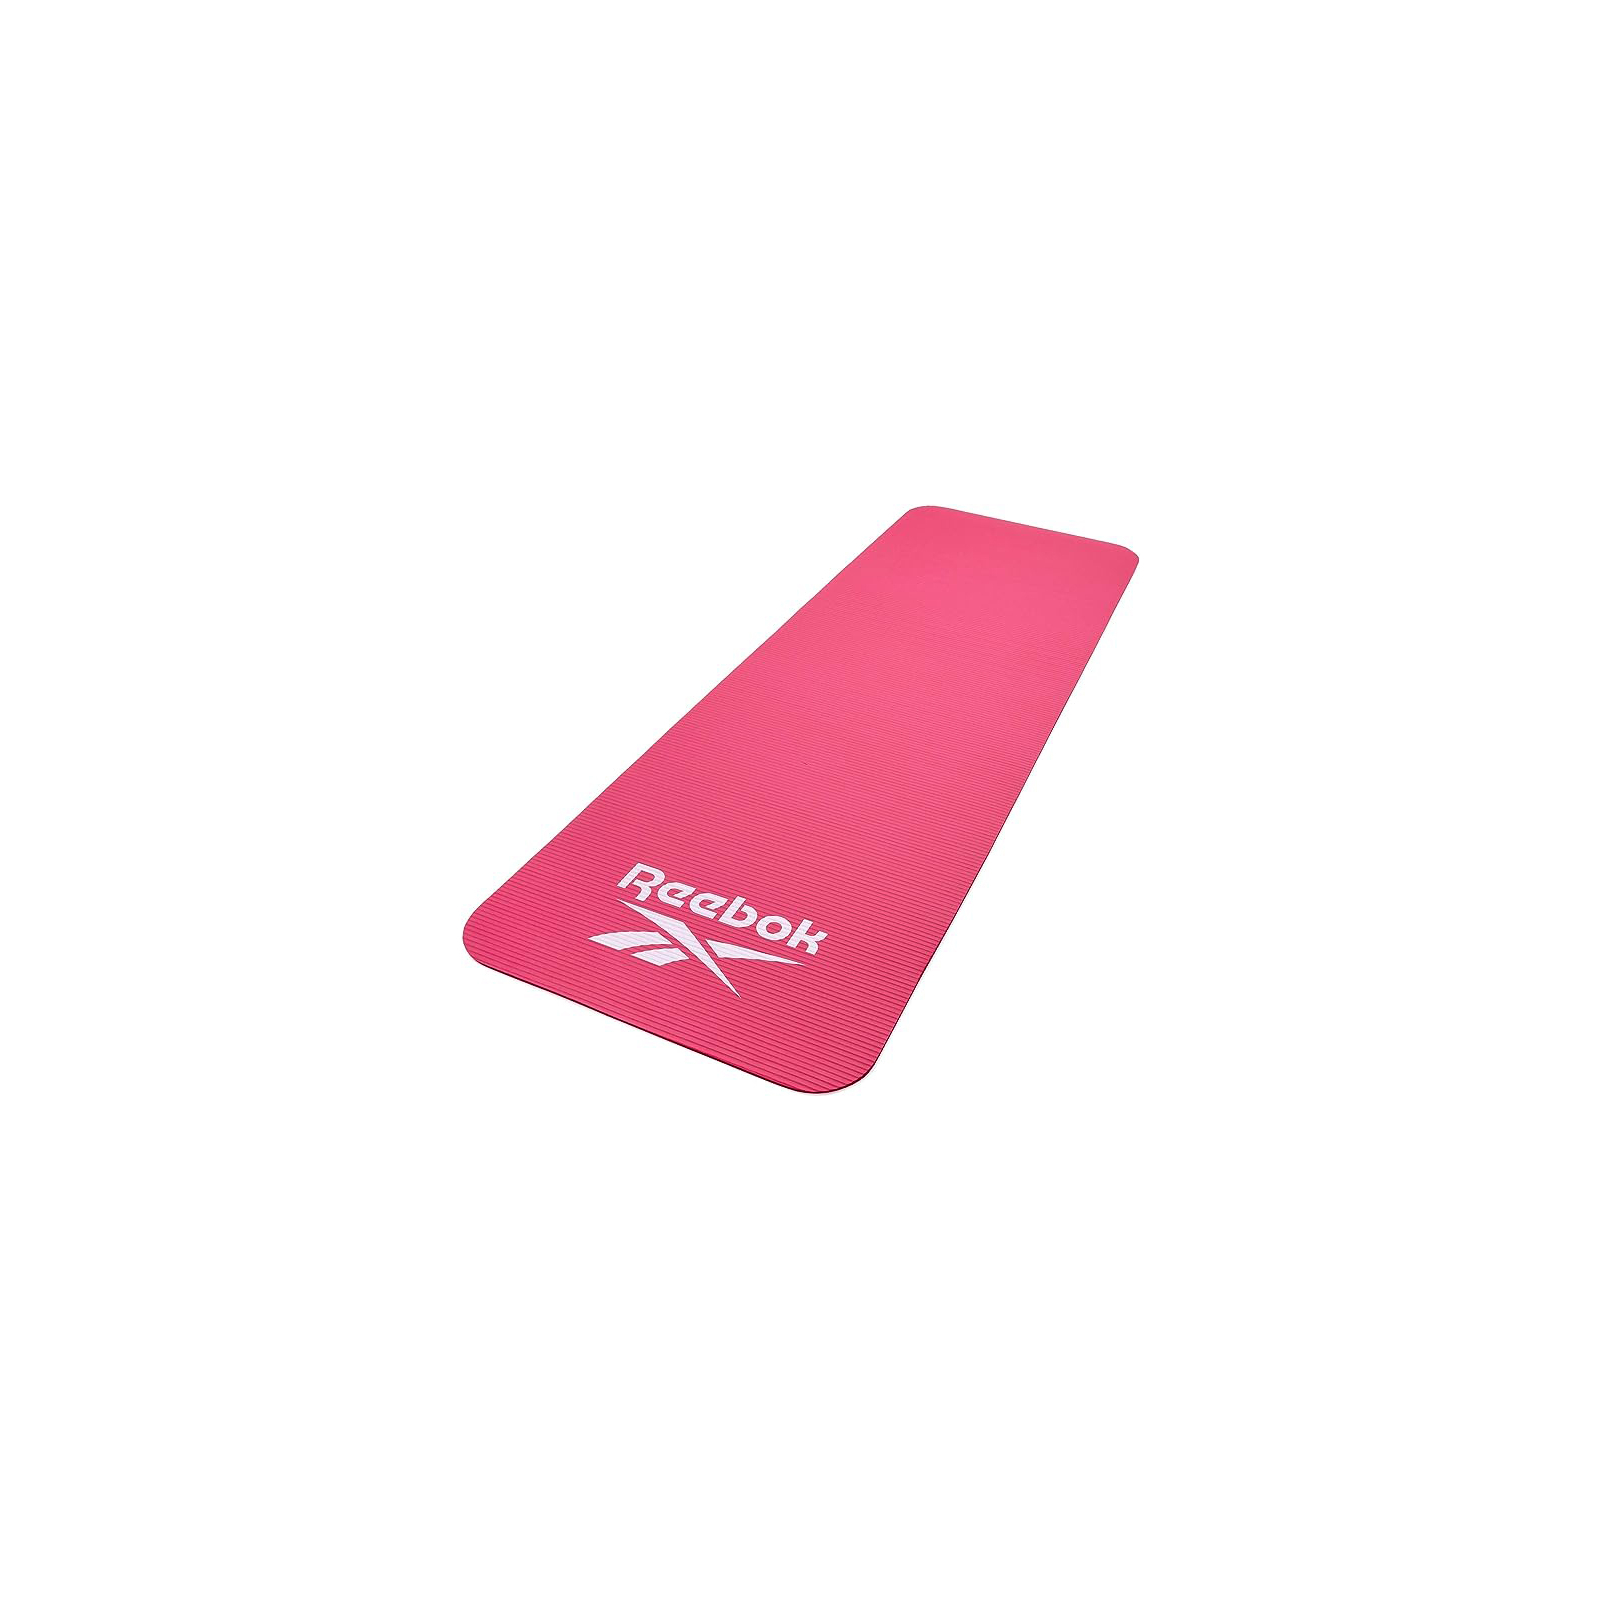 Коврик для фитнеса Reebok Training Mat рожевий 173 x 61 x 0.7 см RAMT-11014PK (885652020404) изображение 3